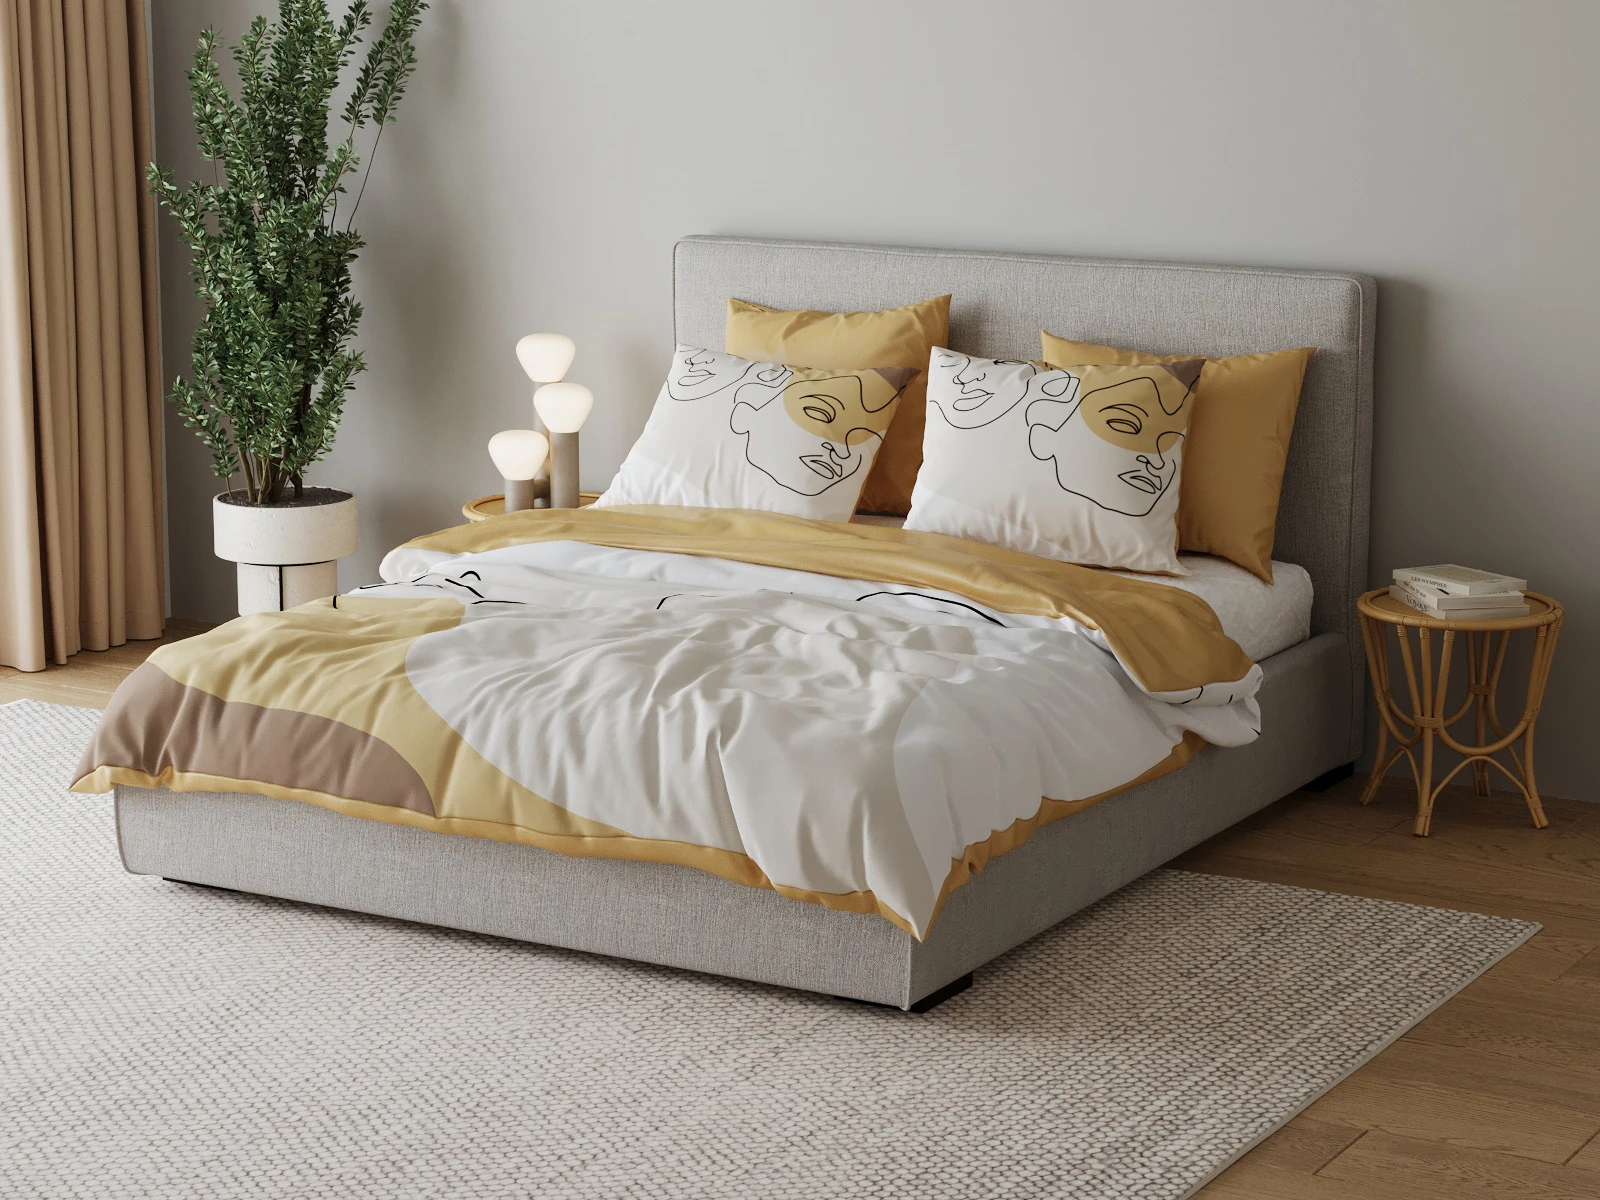 1 Satin bed linen 200x200cm+ 80x80cm (3-piece)